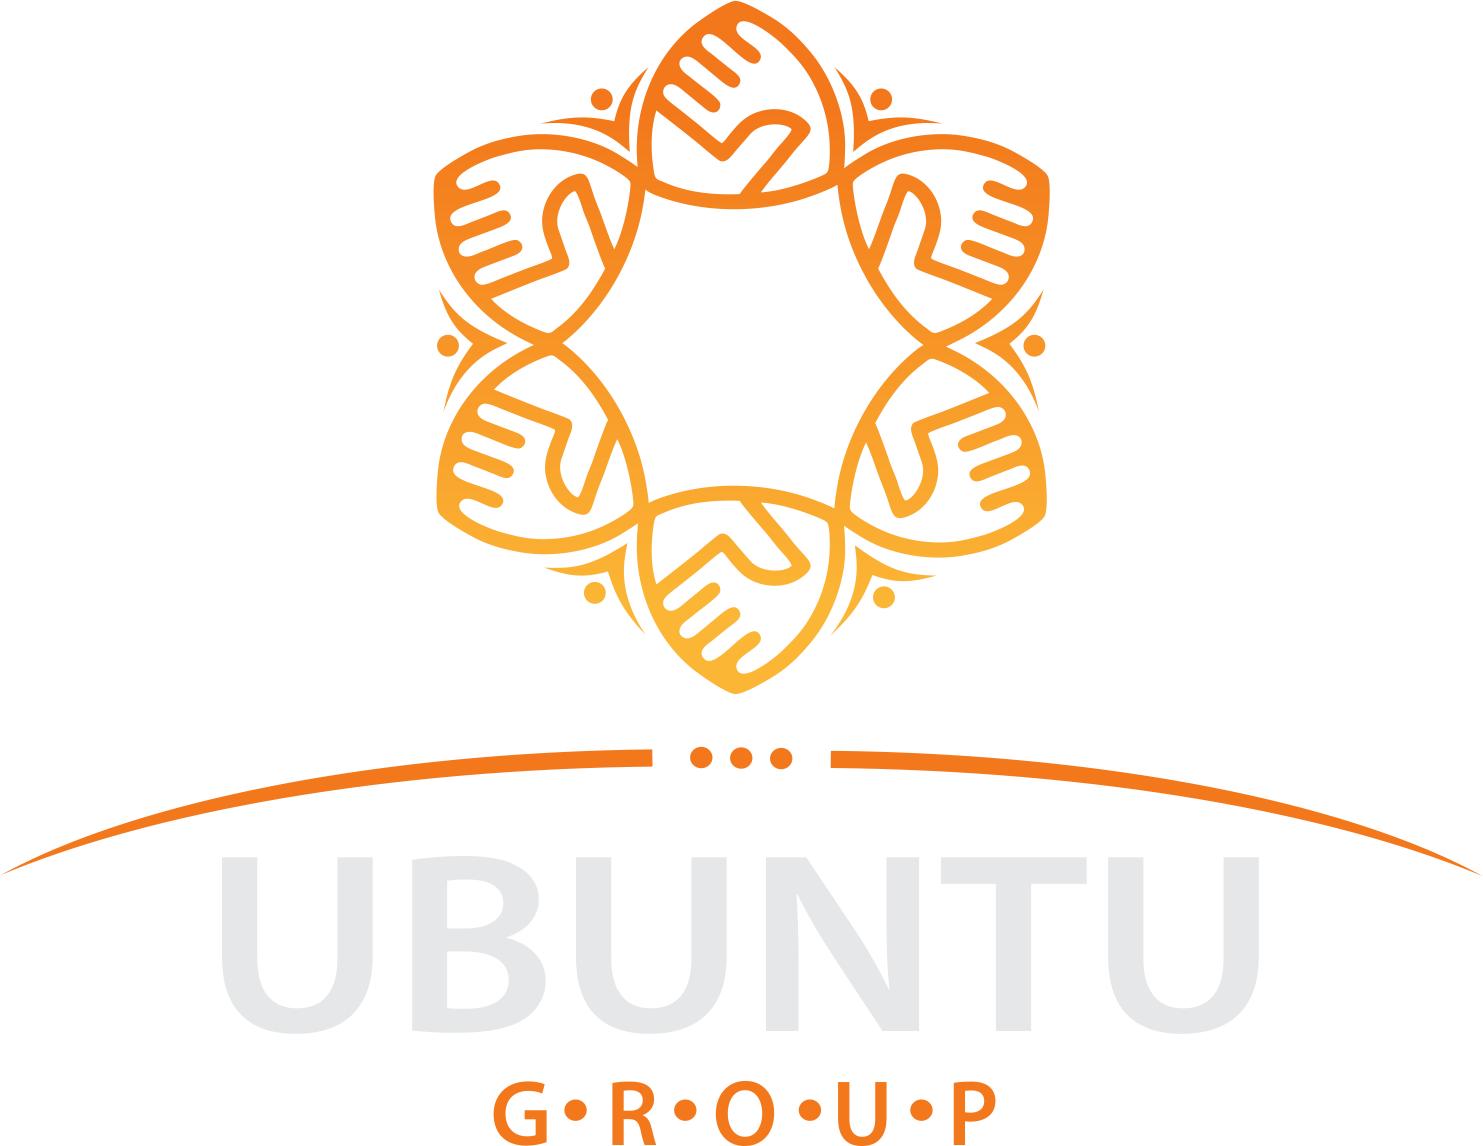 The Ubuntu Group